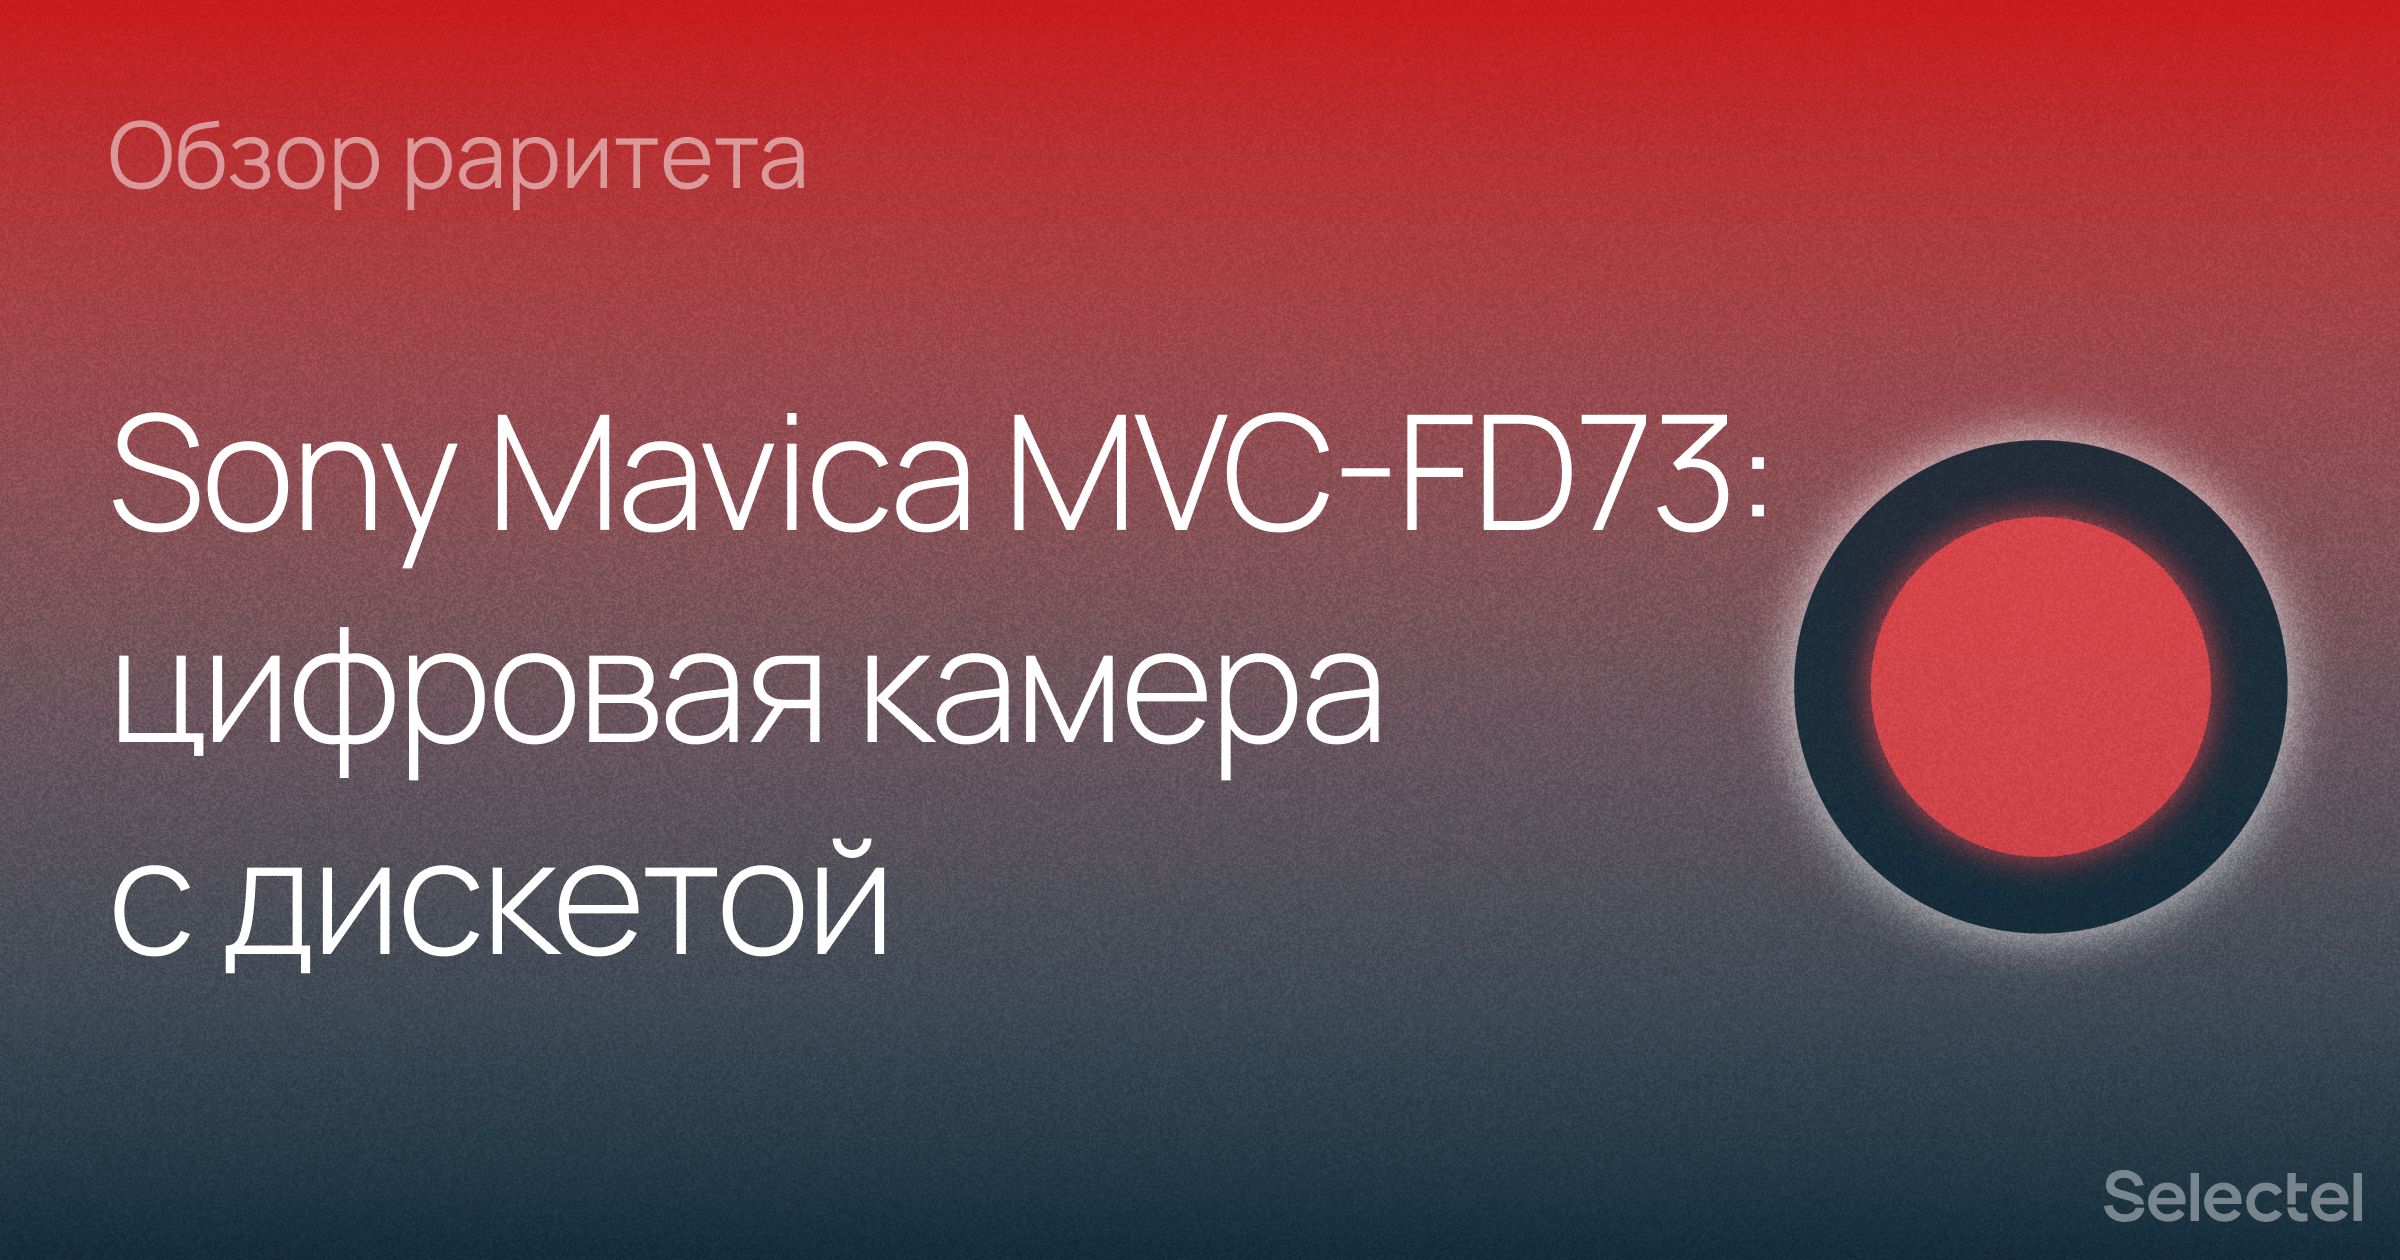 Цифровая камера с дискетой: обозреваем Sony Mavica MVC-FD73 - 1